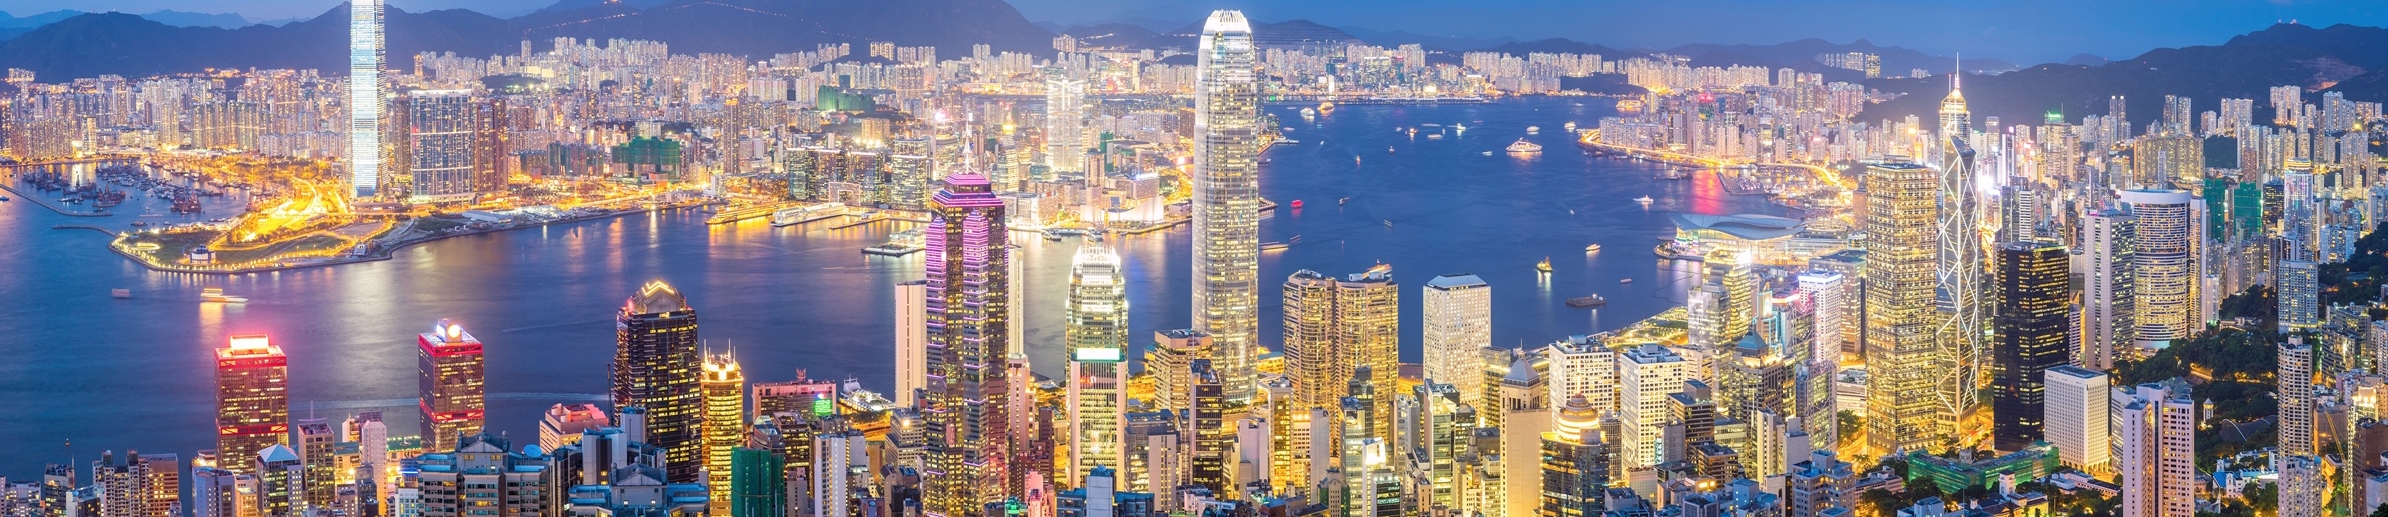 Hong Kong Skyline at Dusk Panorama